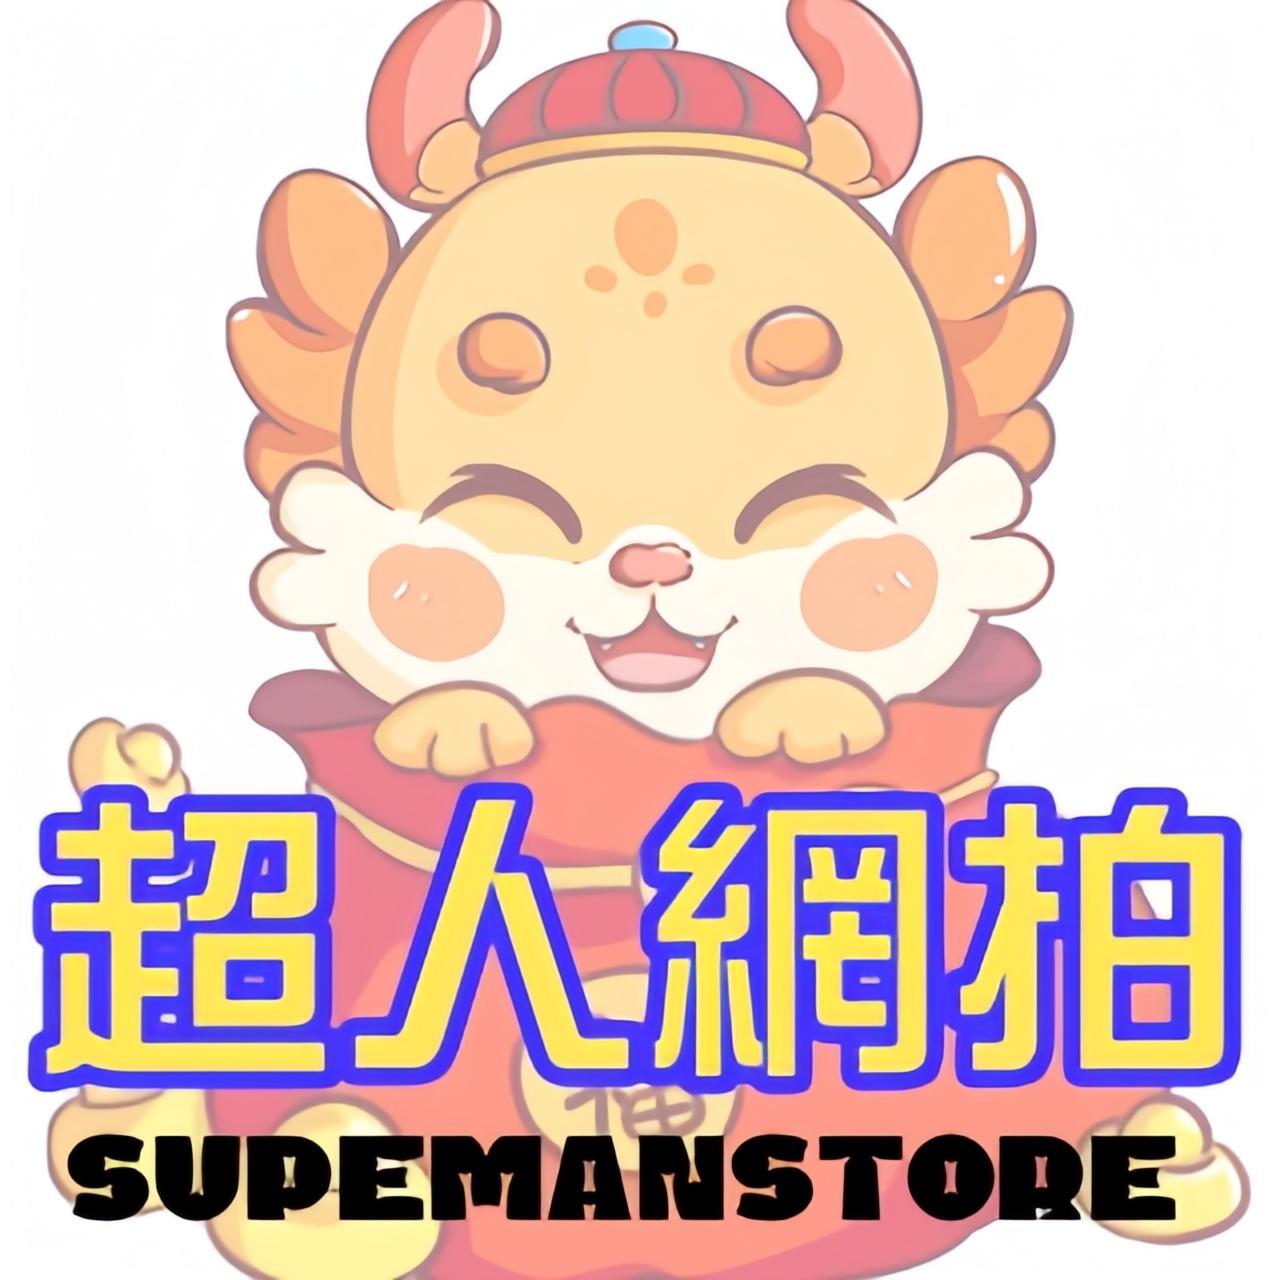 【超人網拍】生活居家百貨/高品質嚴選物件銷售服務館SuperMan's Store